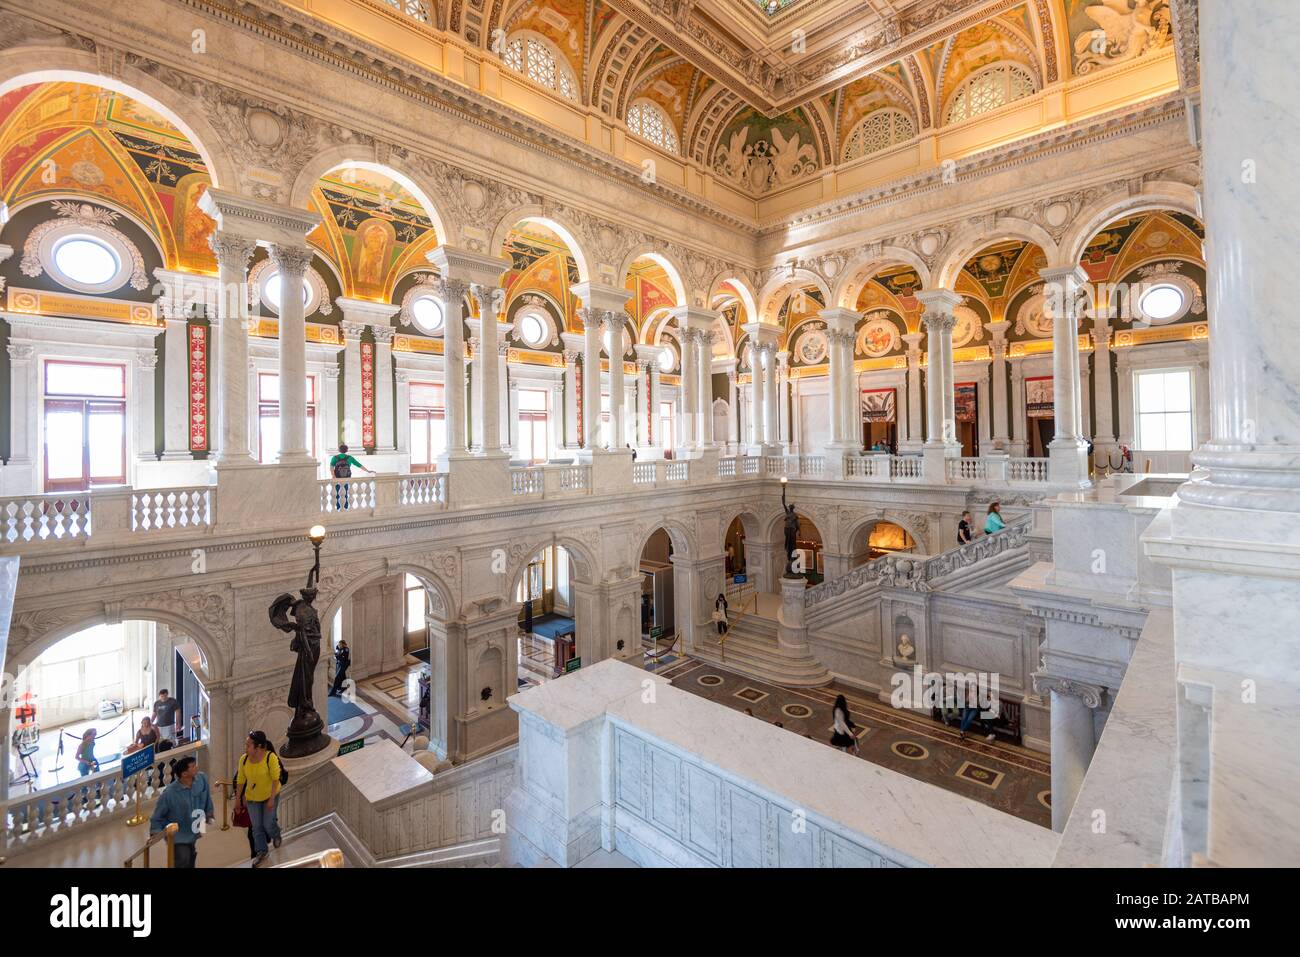 Washington - 12 AVRIL 2015 : plafond du hall d'entrée de la Bibliothèque du Congrès. La bibliothèque sert officiellement le Congrès américain. Banque D'Images